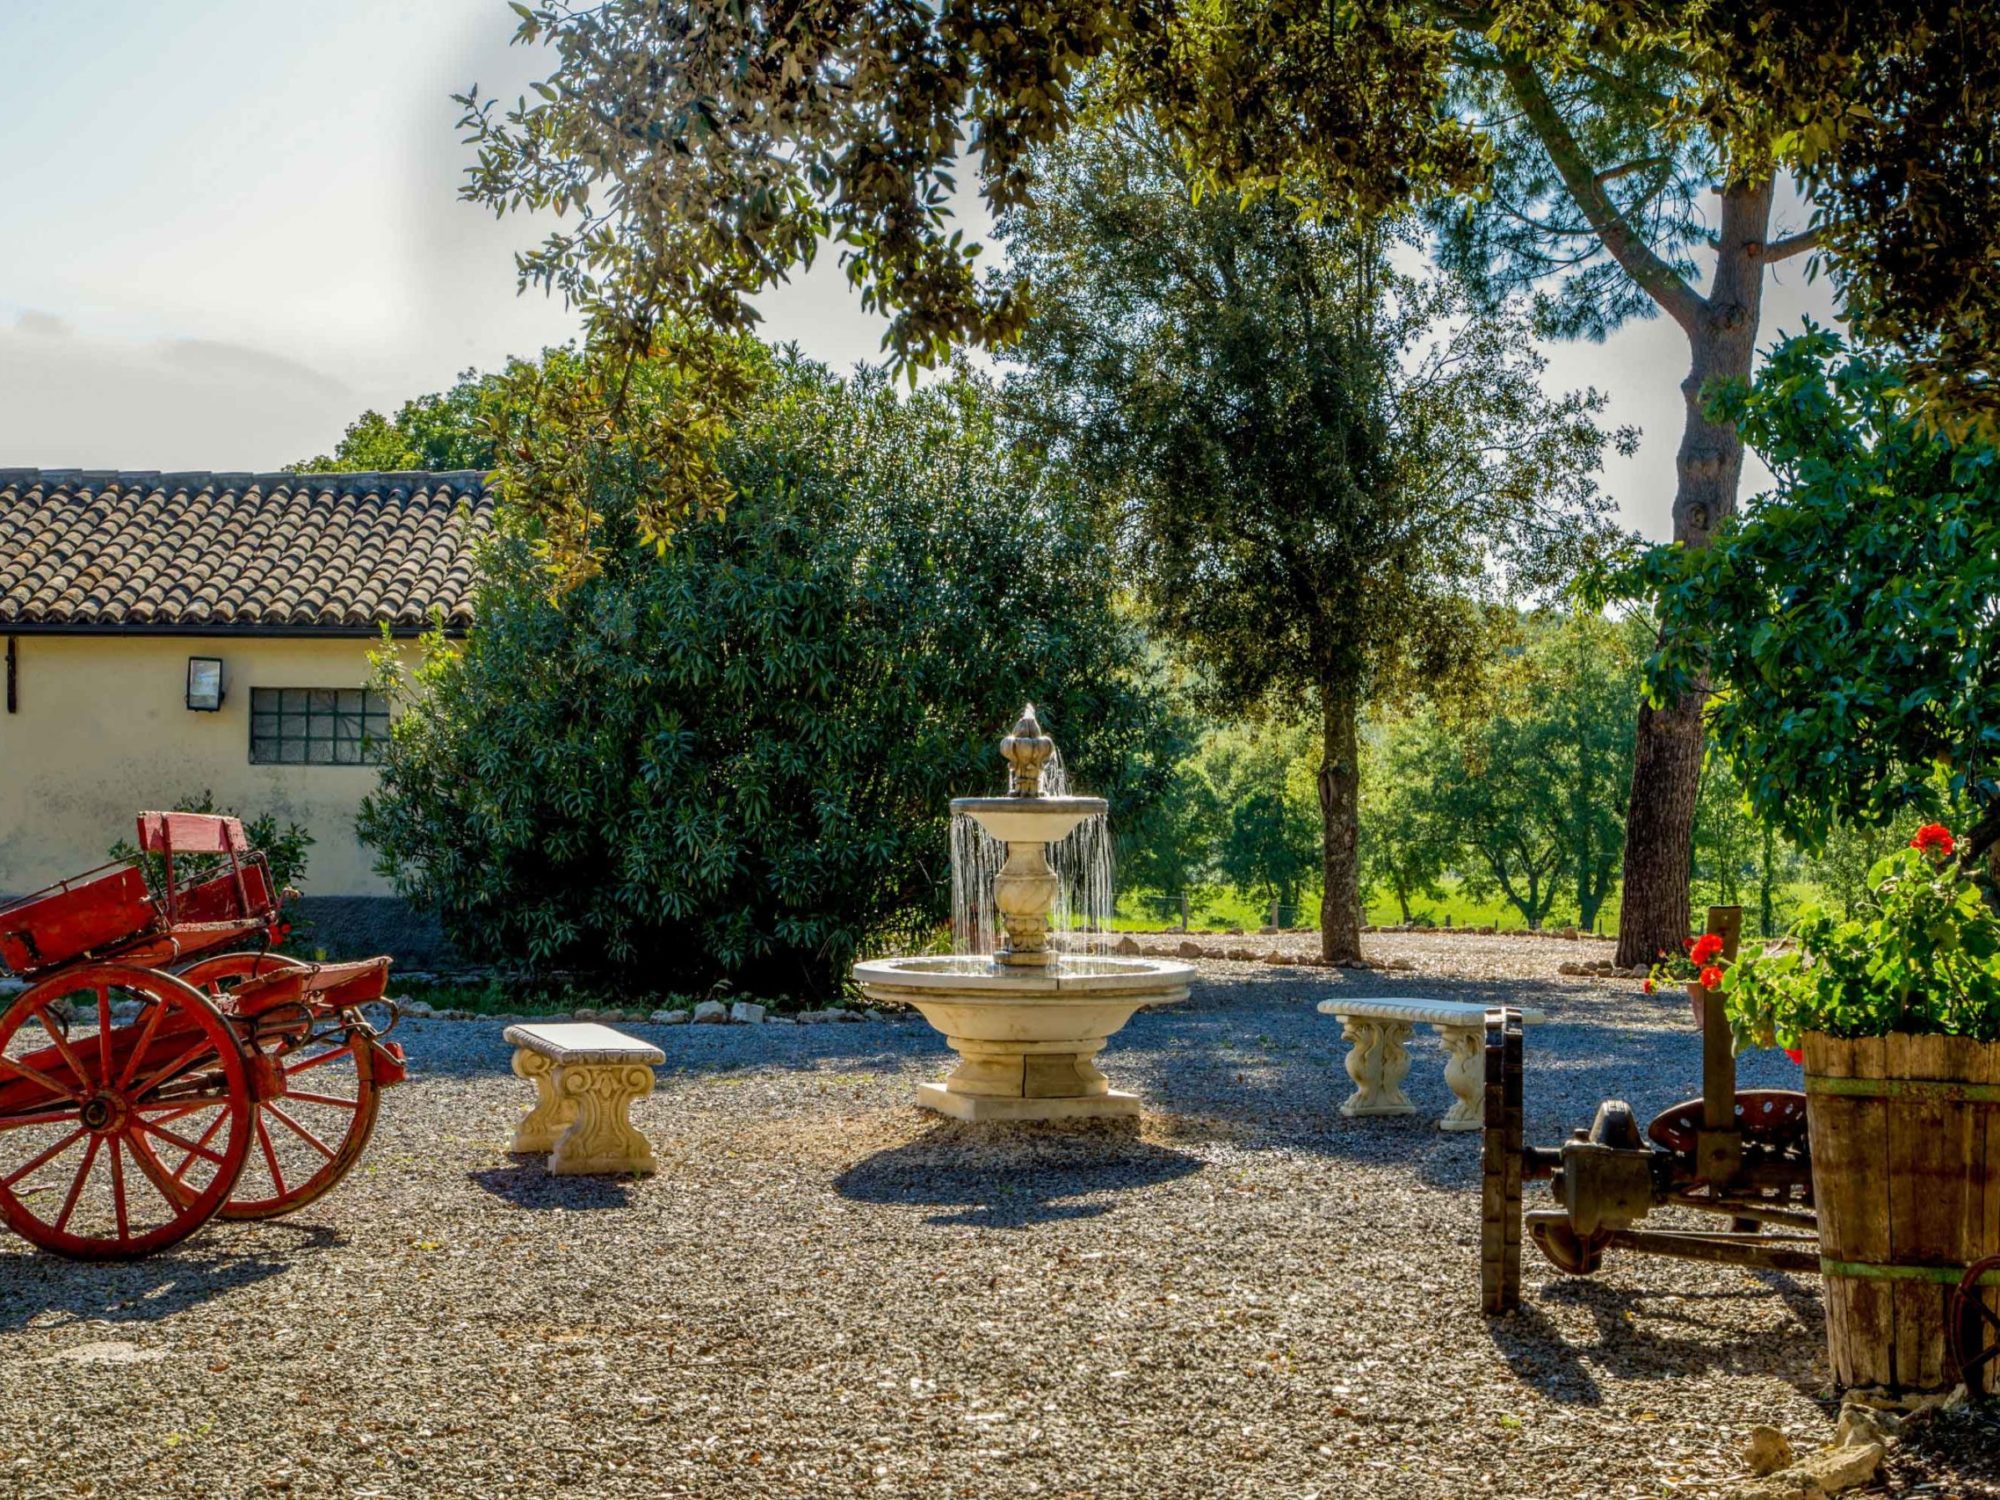 borgovera-tuscany-vacation-toscana-maremma-terme-saturnia-manciano-dettagli-giardino-1